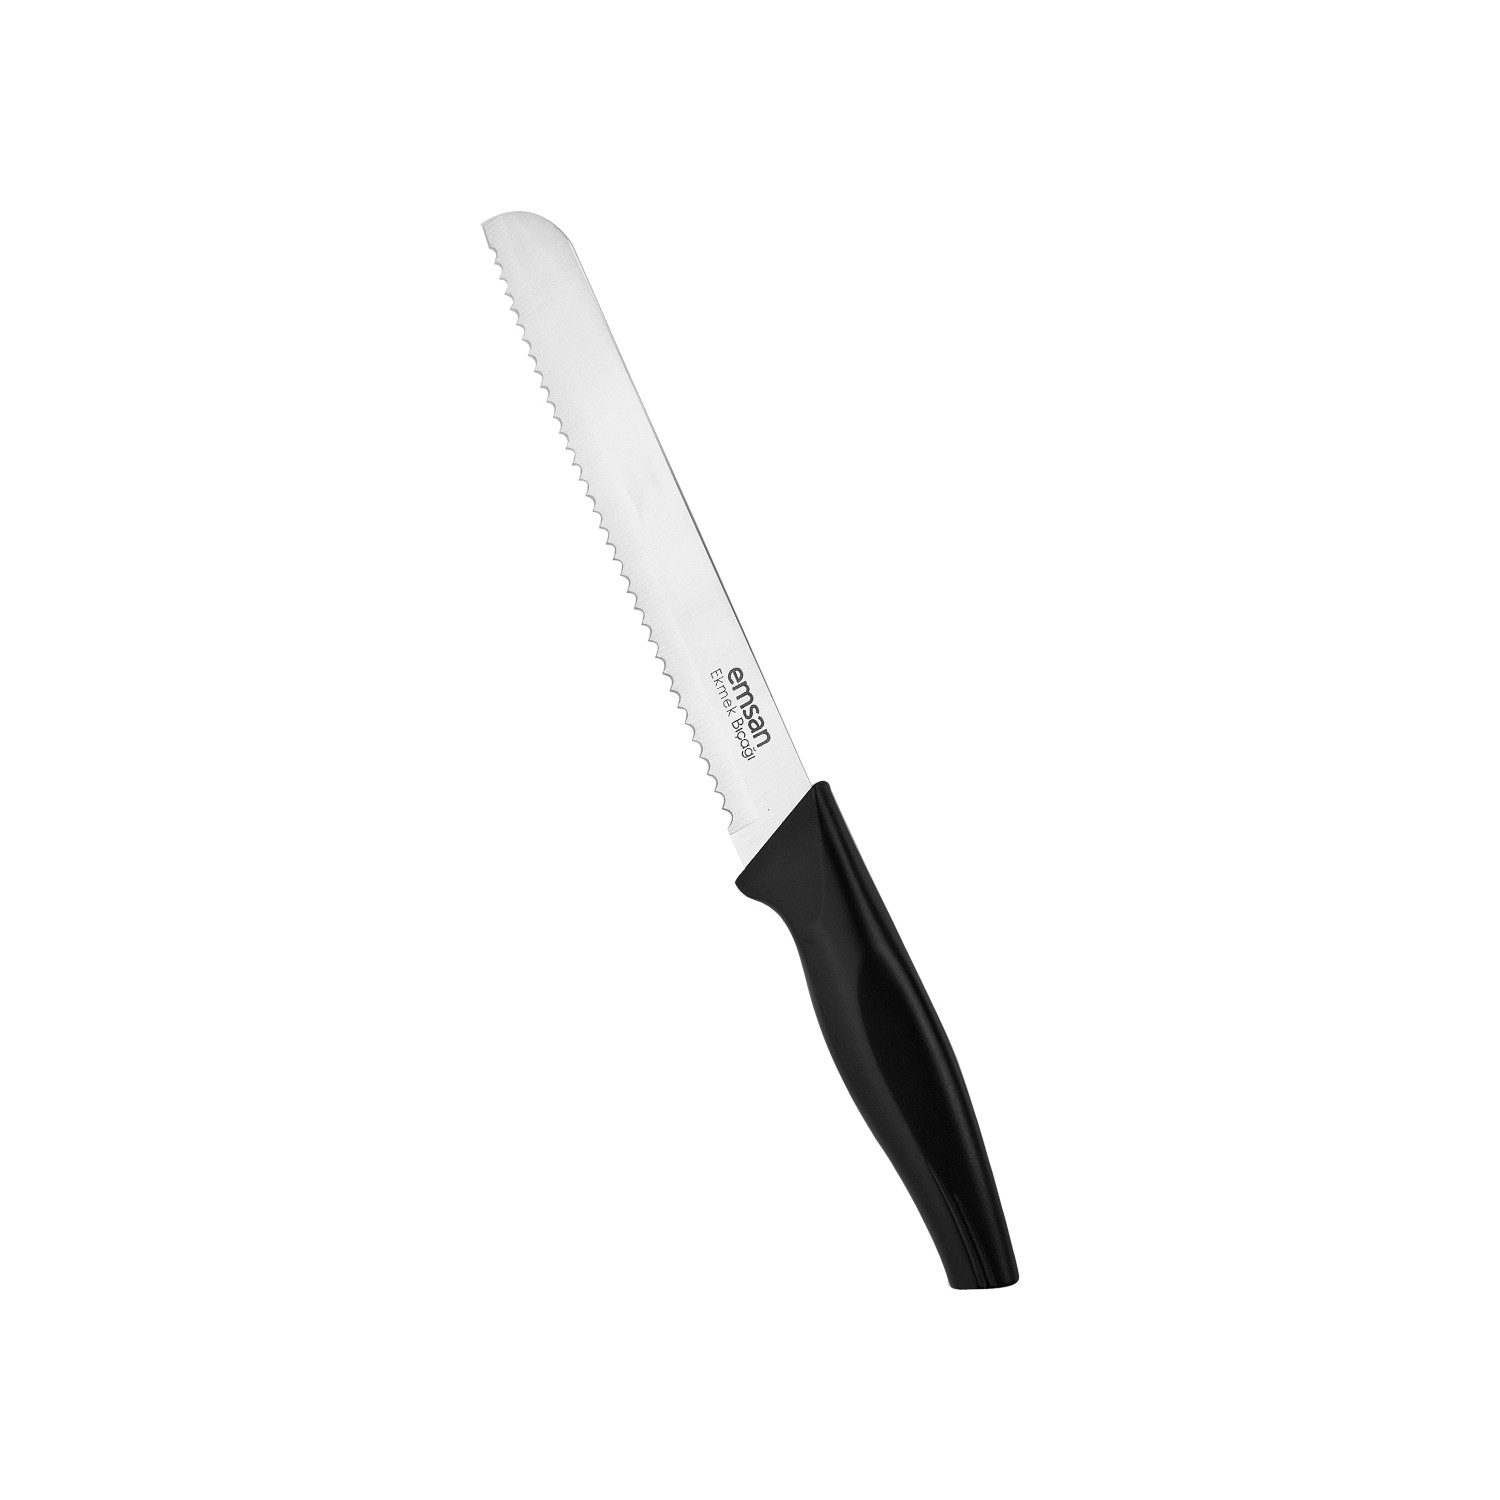 ست چاقوی آشپزخانه 6 پارچه امسان مدل Emsan Sharp Master